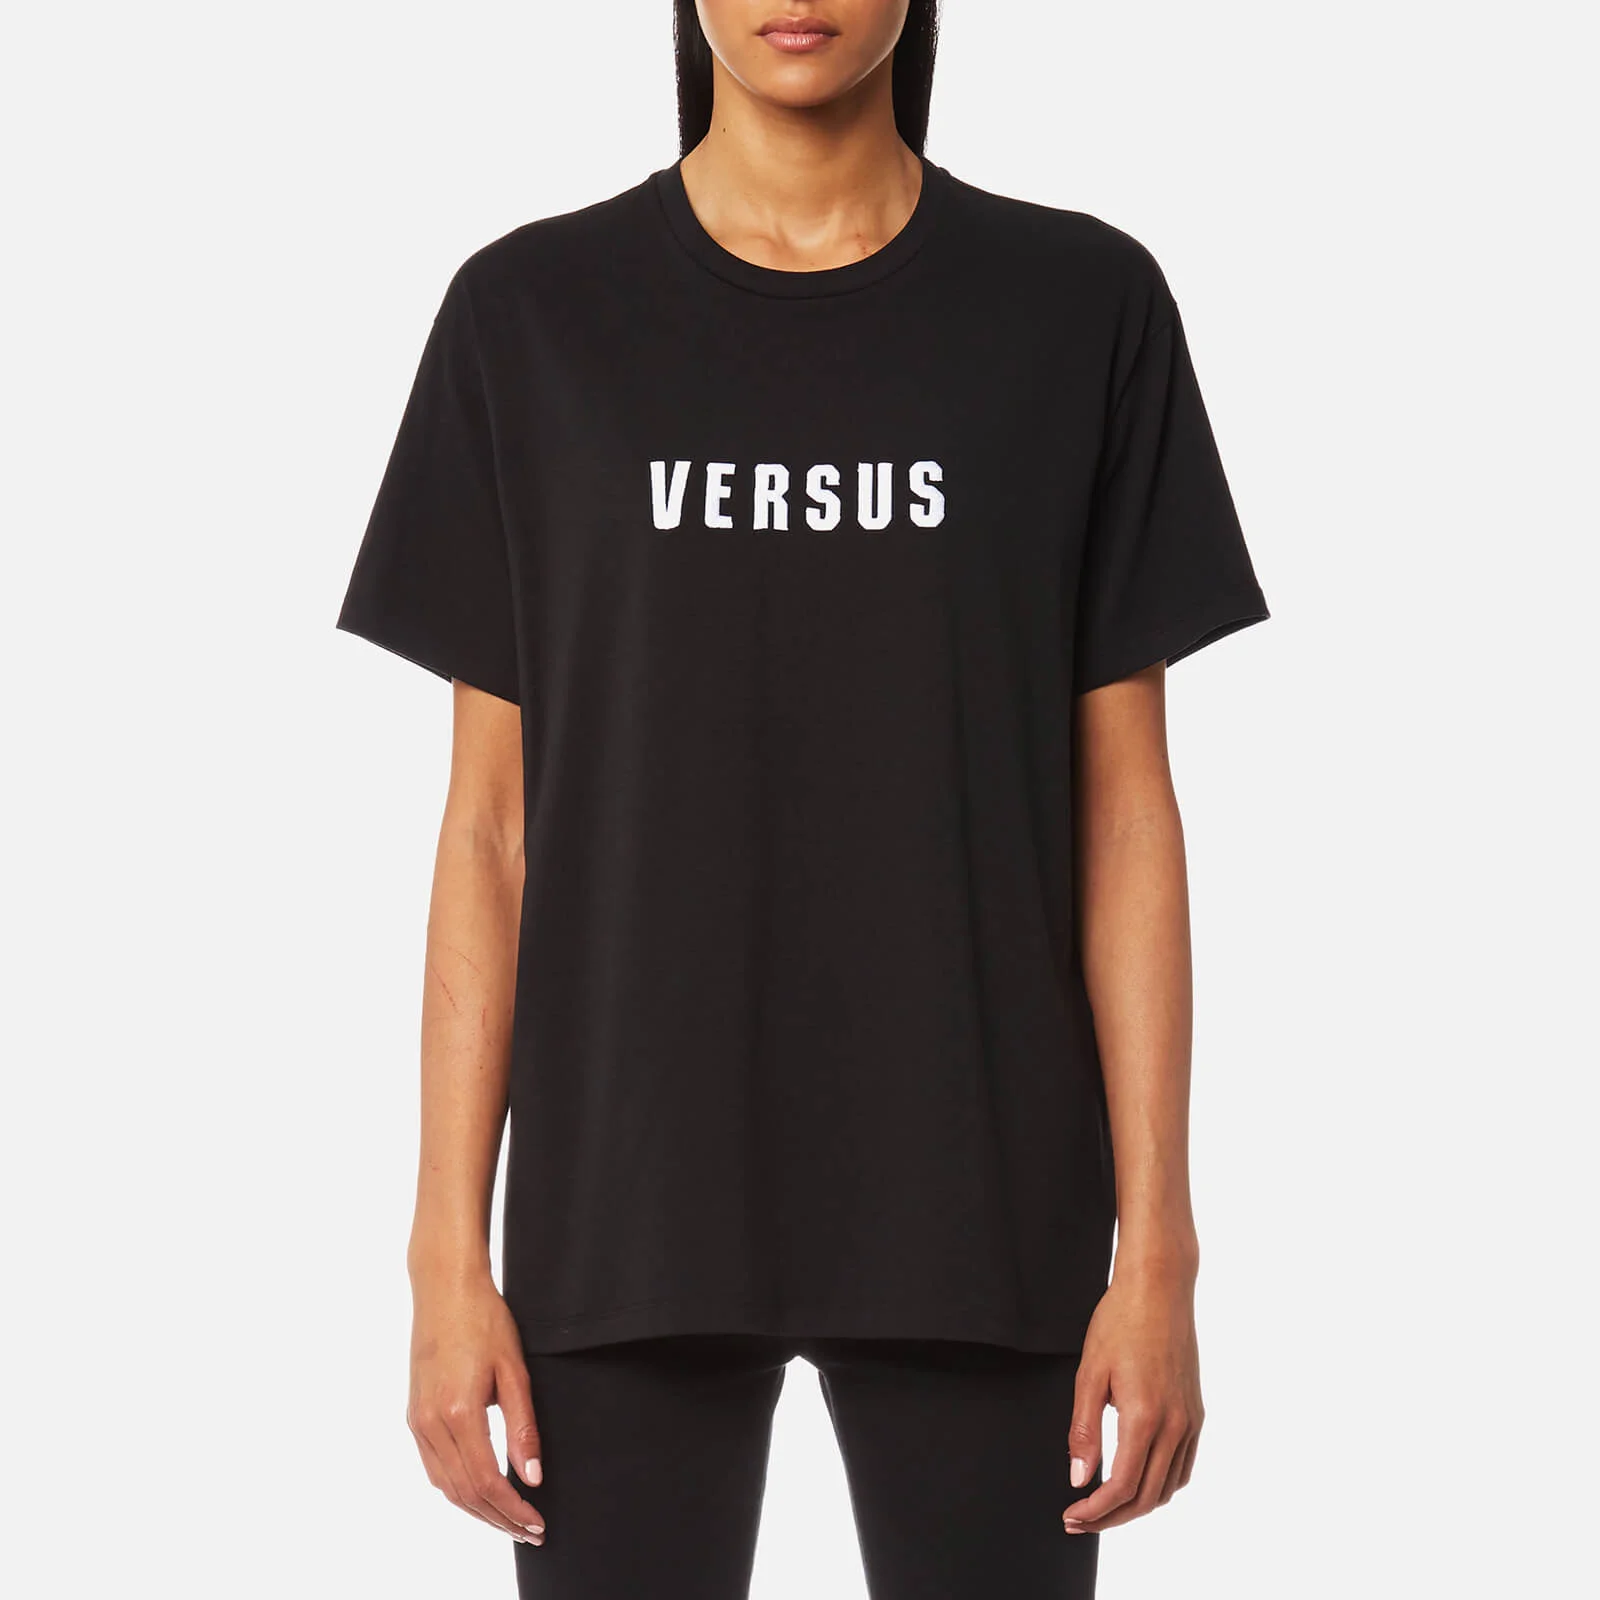 Versus Versace Women's Versus Oversized T-Shirt - Black Image 1